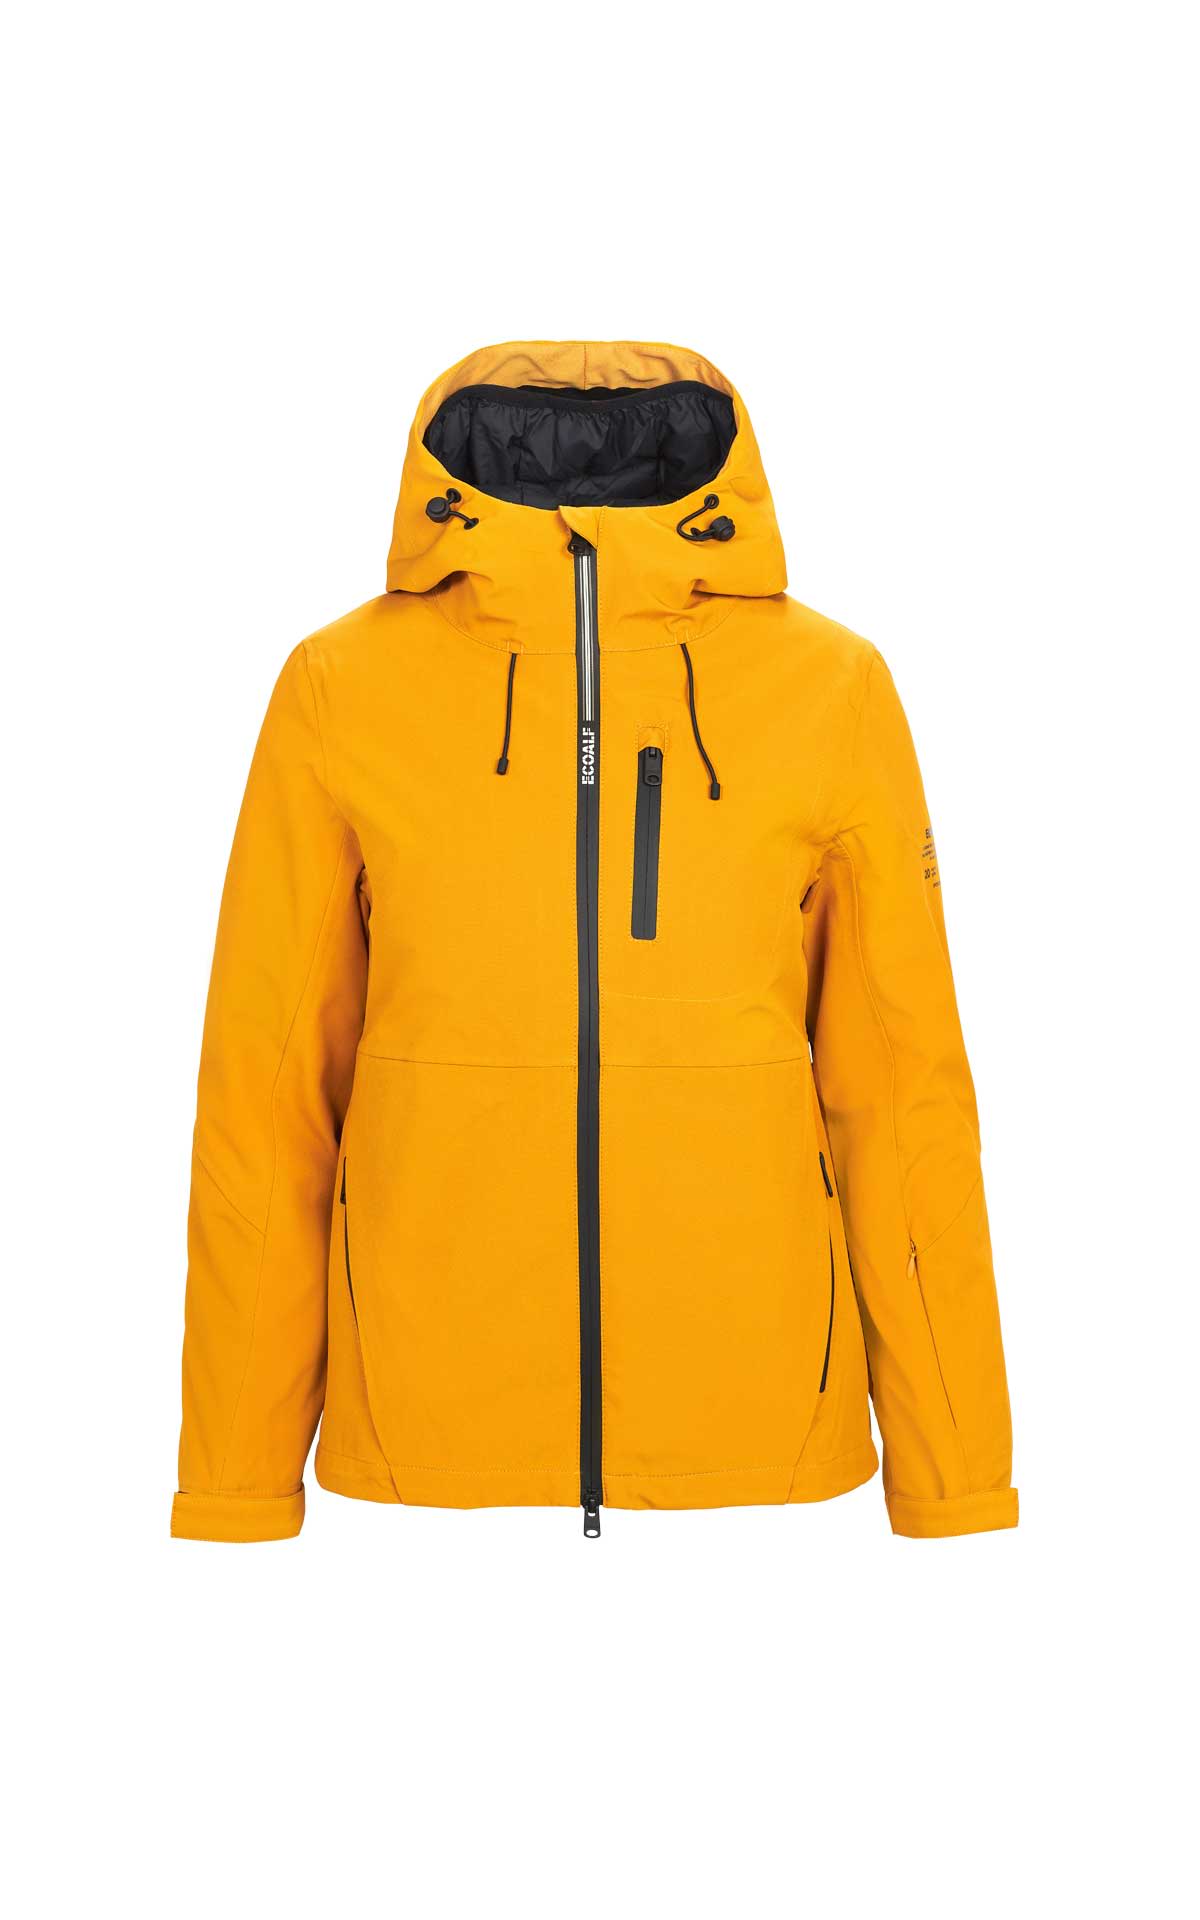 Mandalf yellow jacket Ecoalf